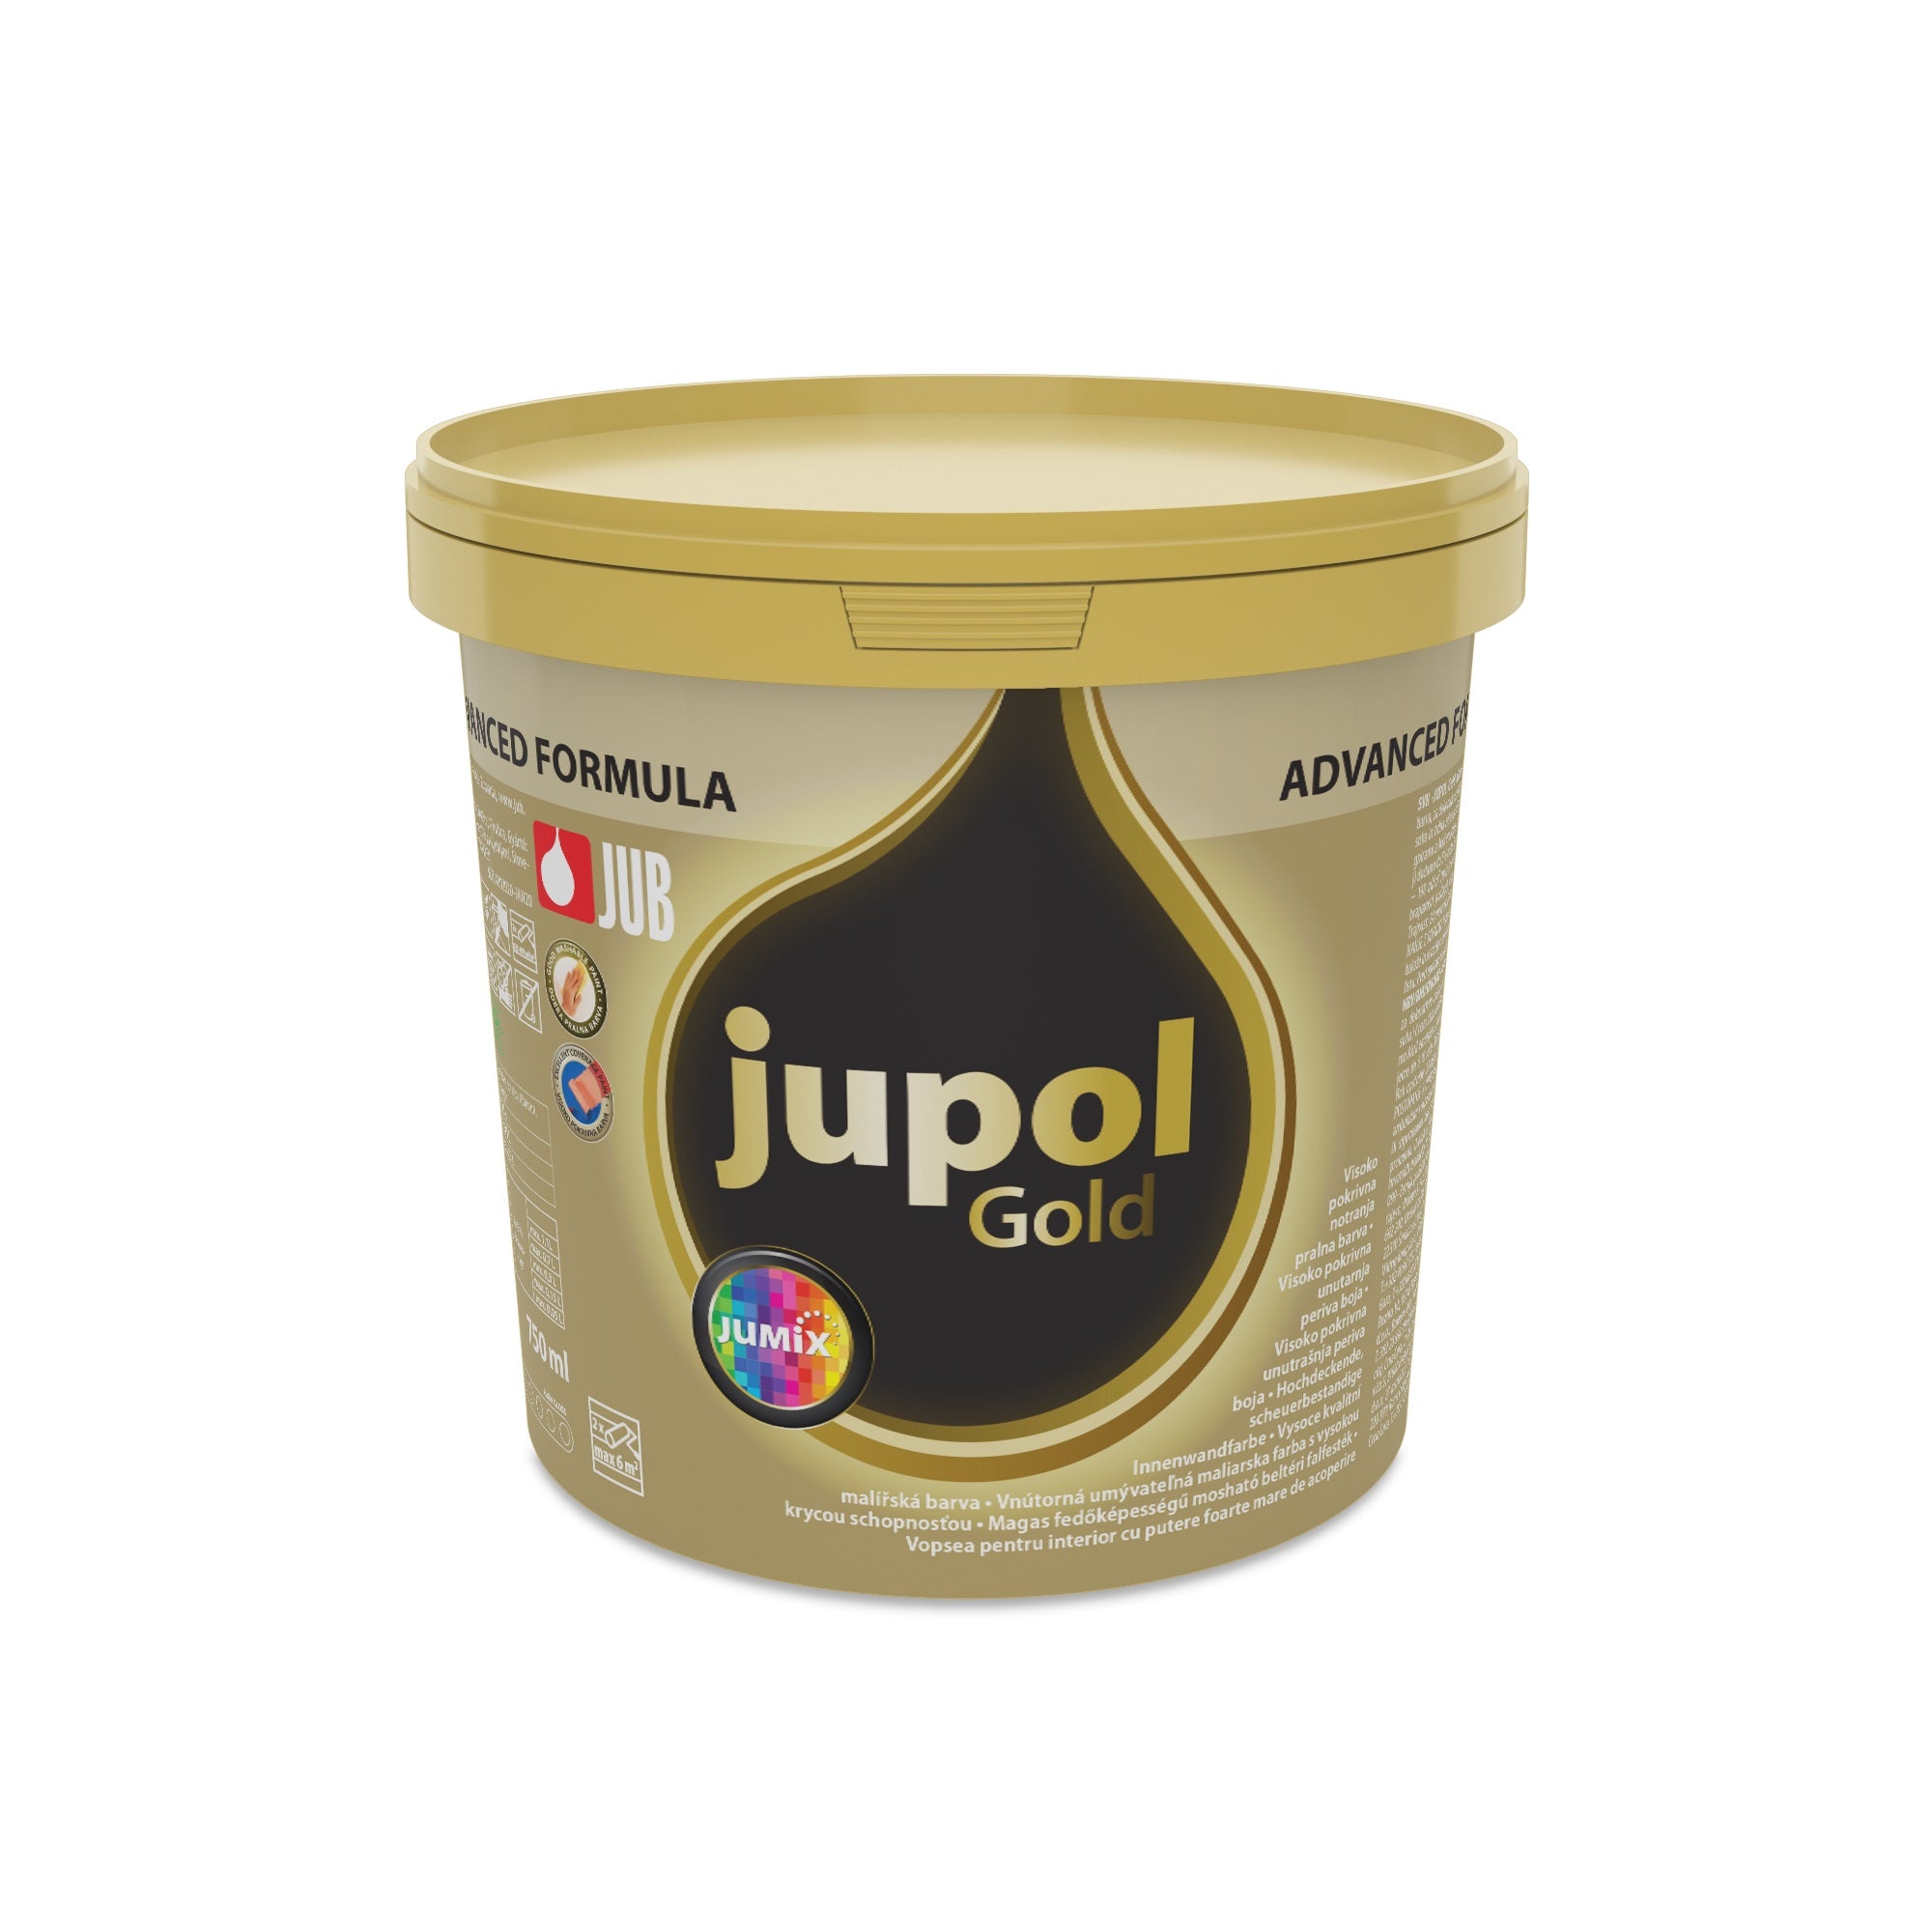 JUB JUPOL Gold advanced vnútorná umývateľná maliarska farba 0,75 l